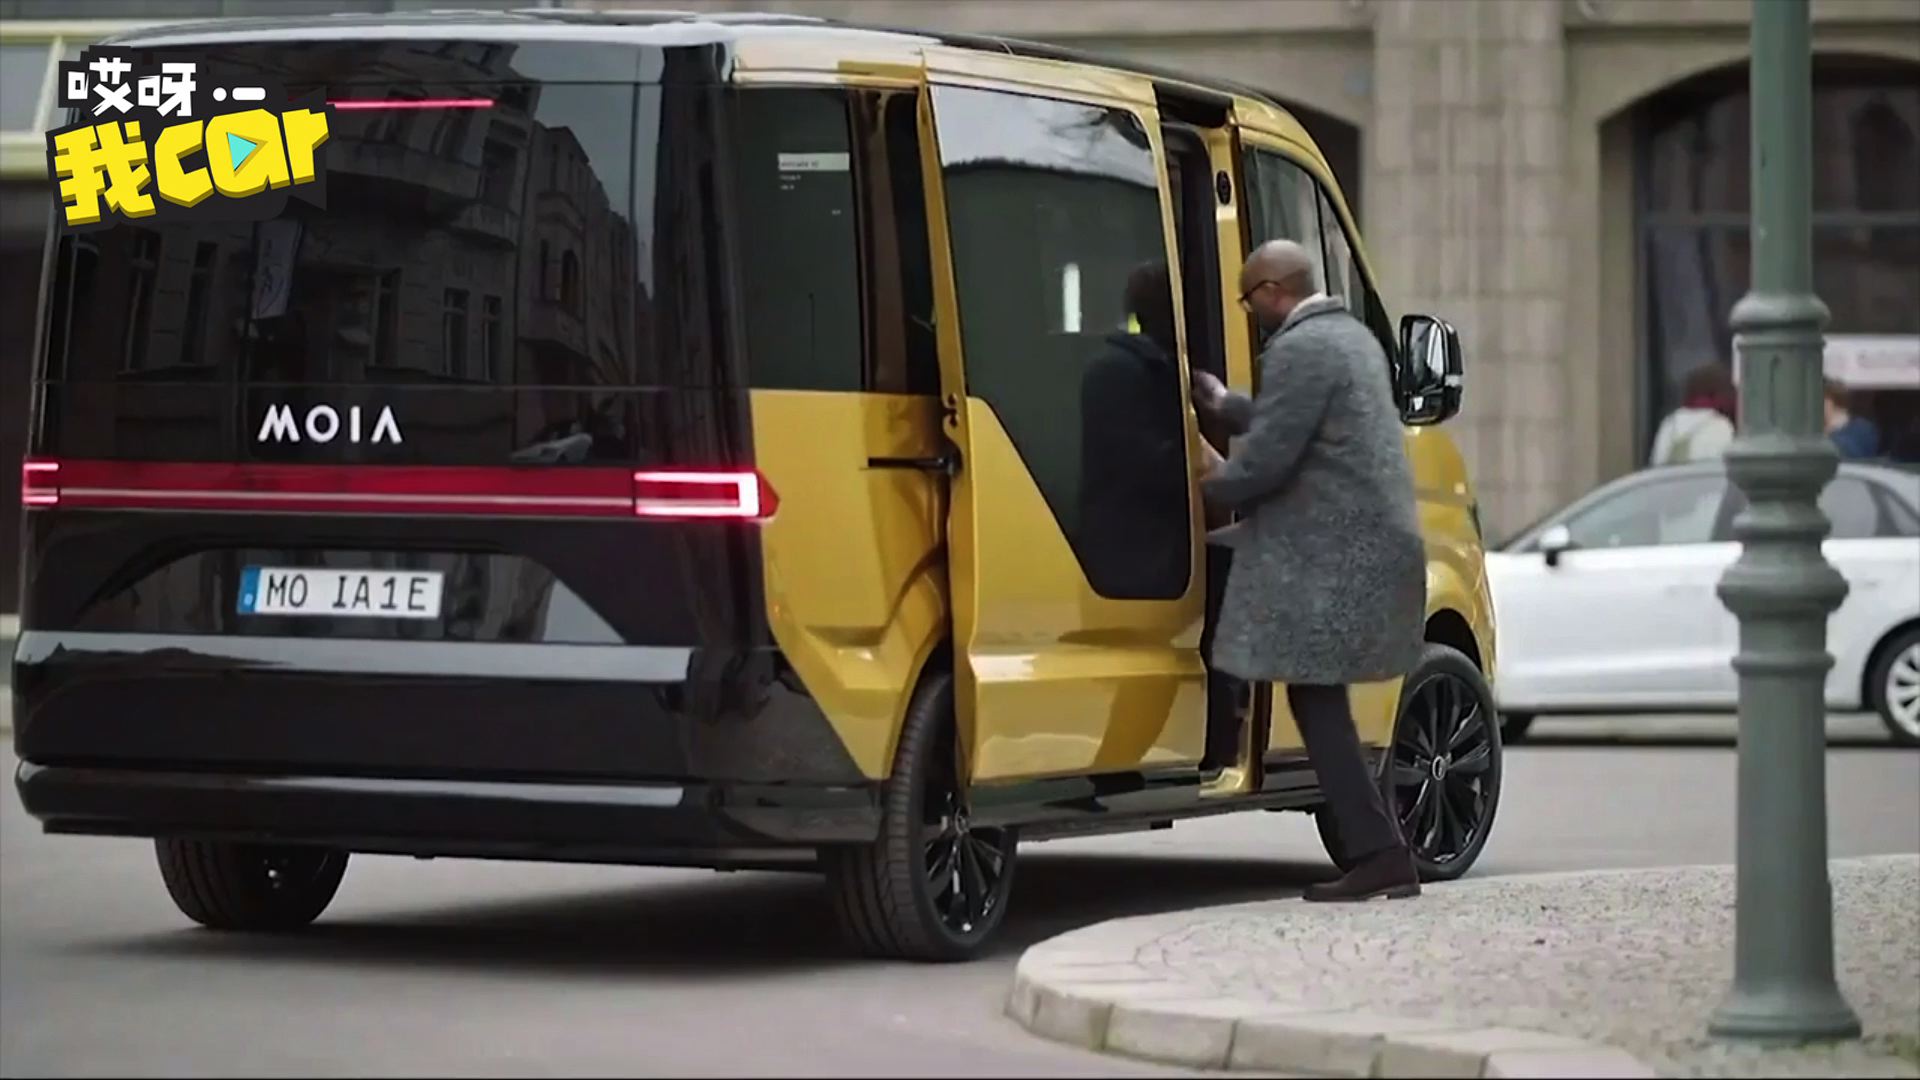 大众旗下moia推出纯电动车共享巴士舒适快捷有wifi